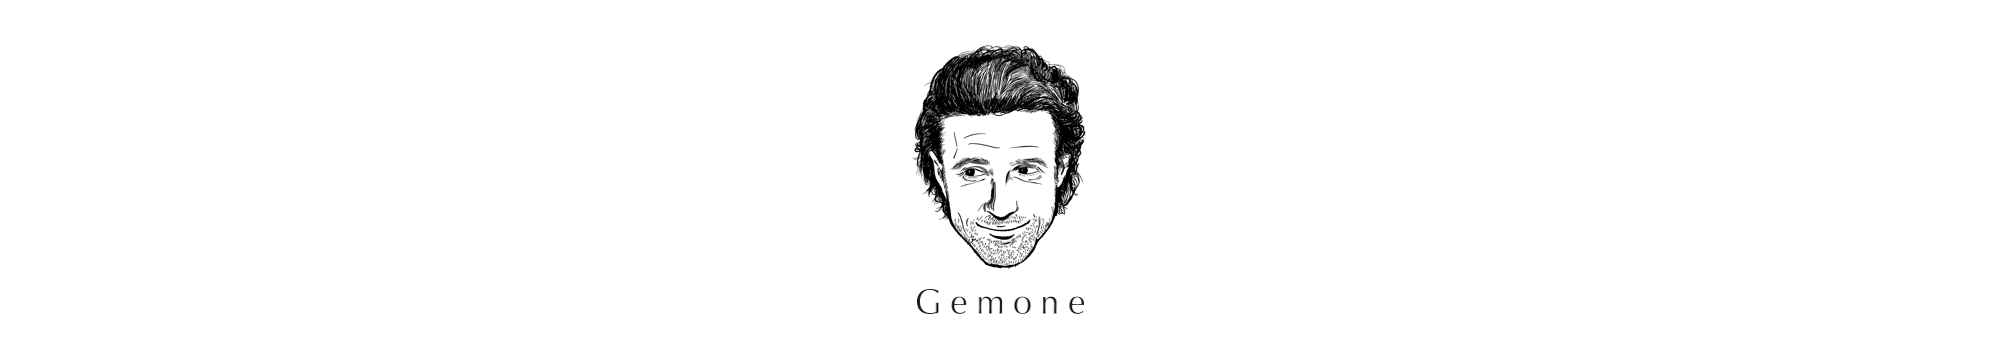 Gemone新ブランドローンチのお知らせ